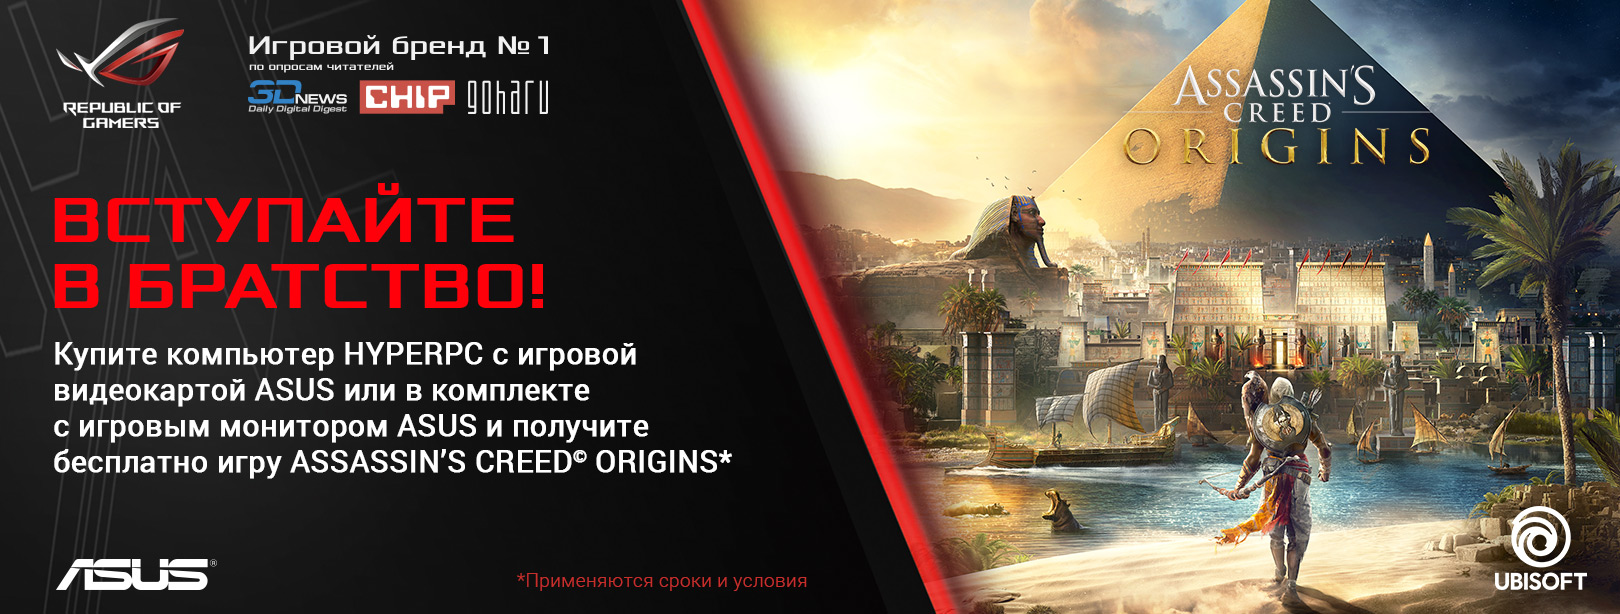 Купите компьютер HYPERPC с игровой видеокартой ASUS или в комплекте с монитор ASUS и получите бесплатно игру Assassin's Creed Origins